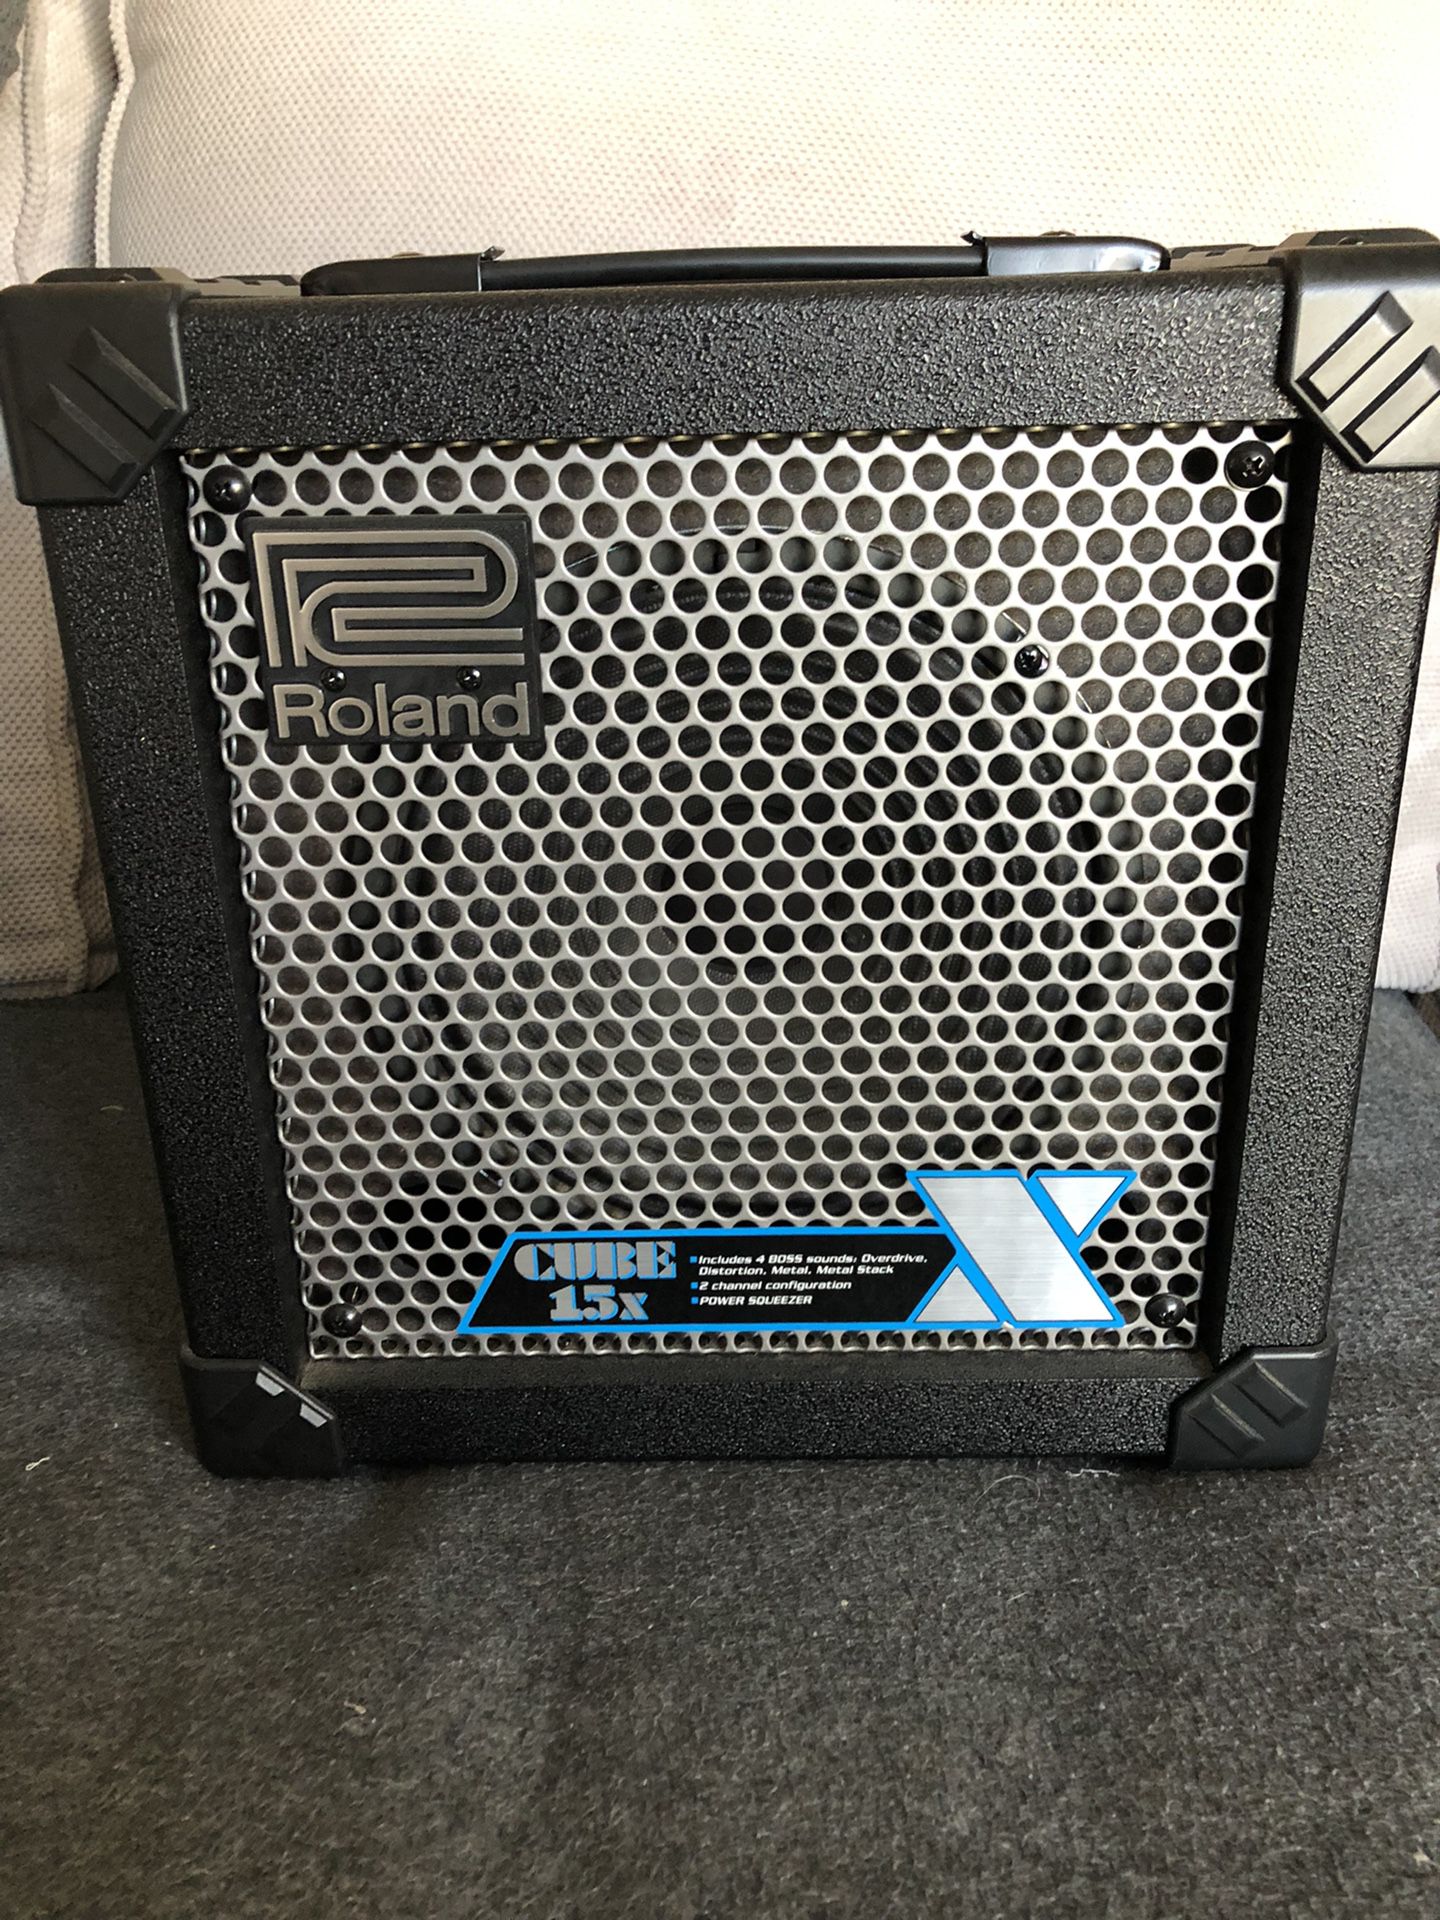 Roland Cube-15x Guitar Amp